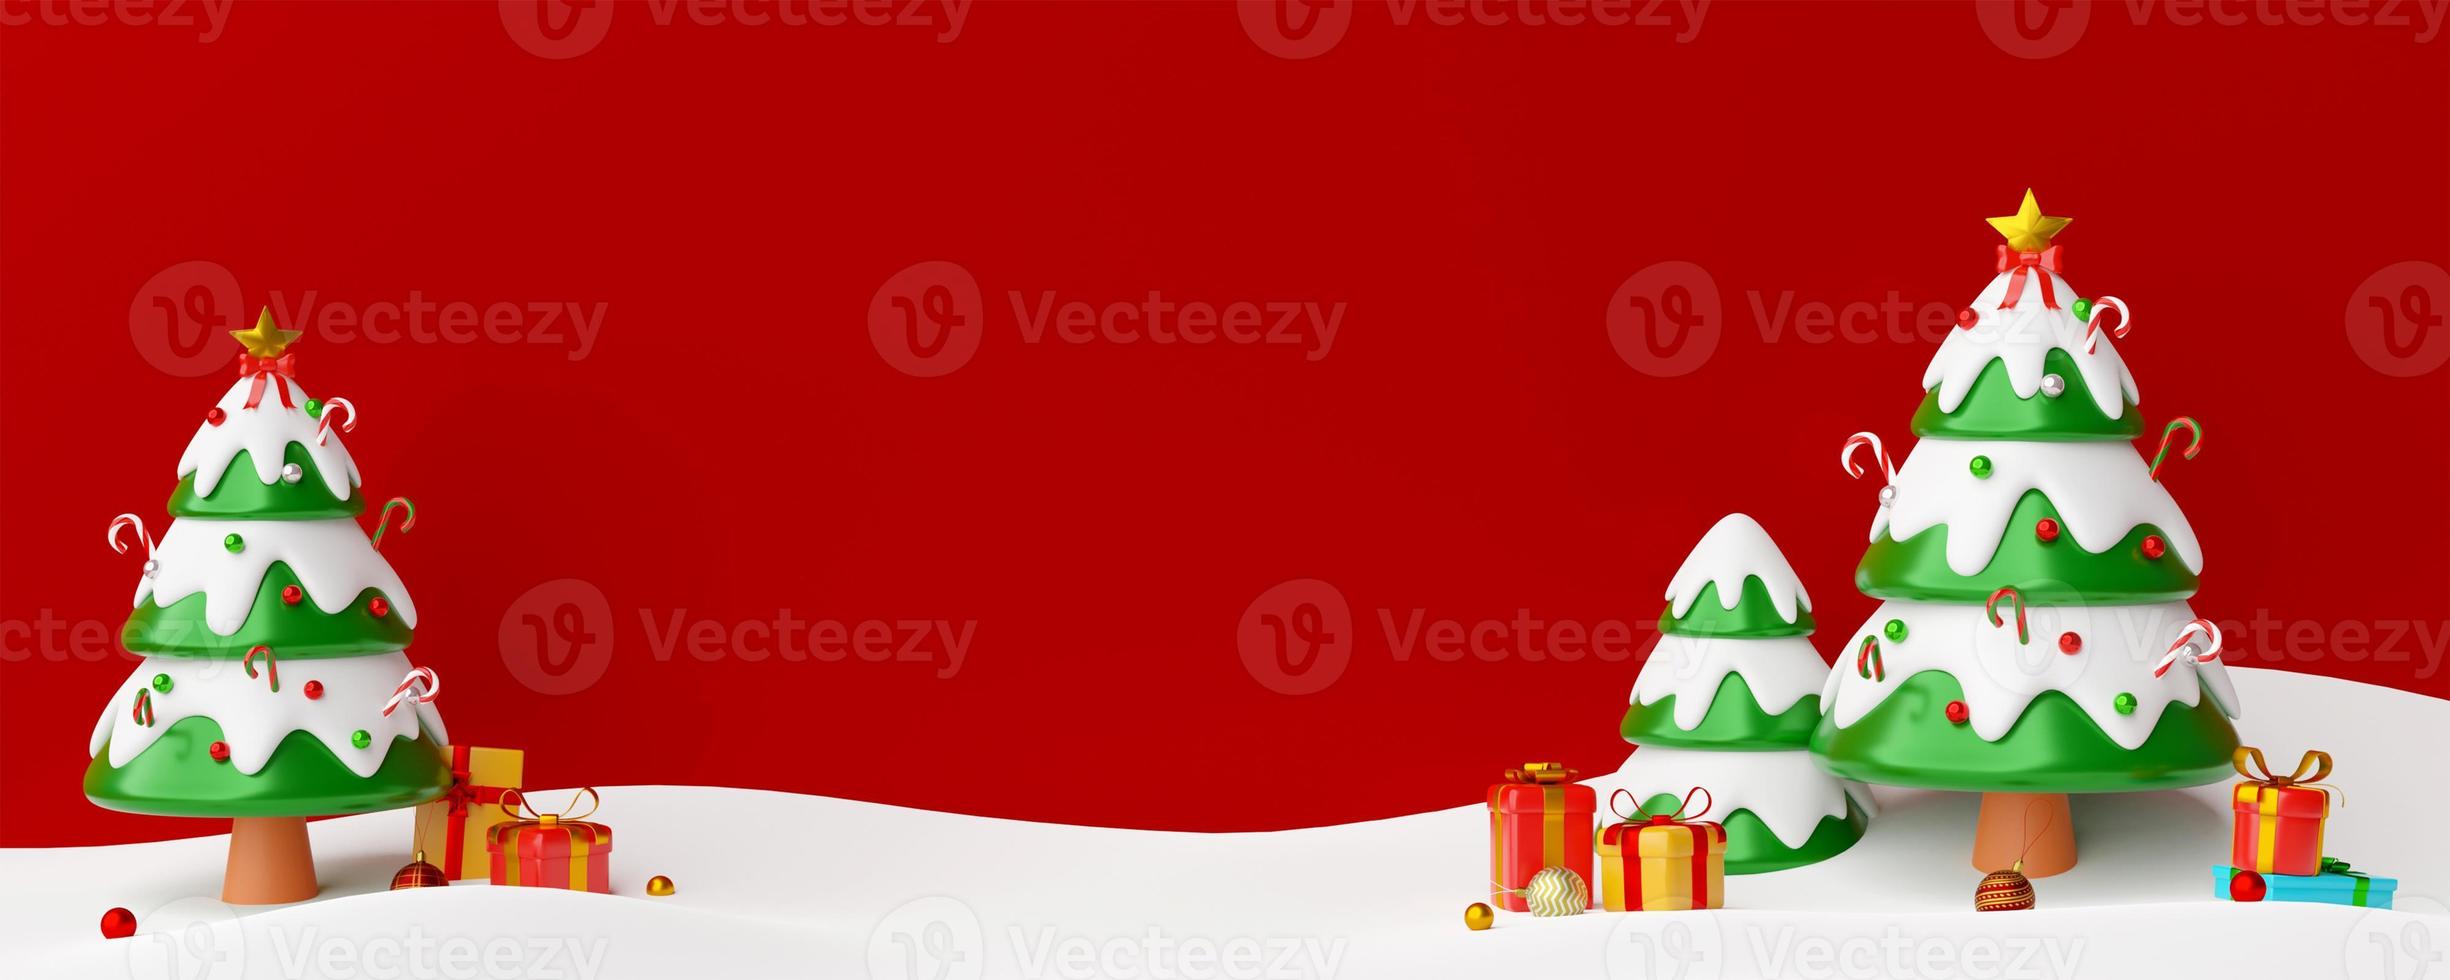 postal de natal da árvore de natal com presentes, ilustração 3D foto